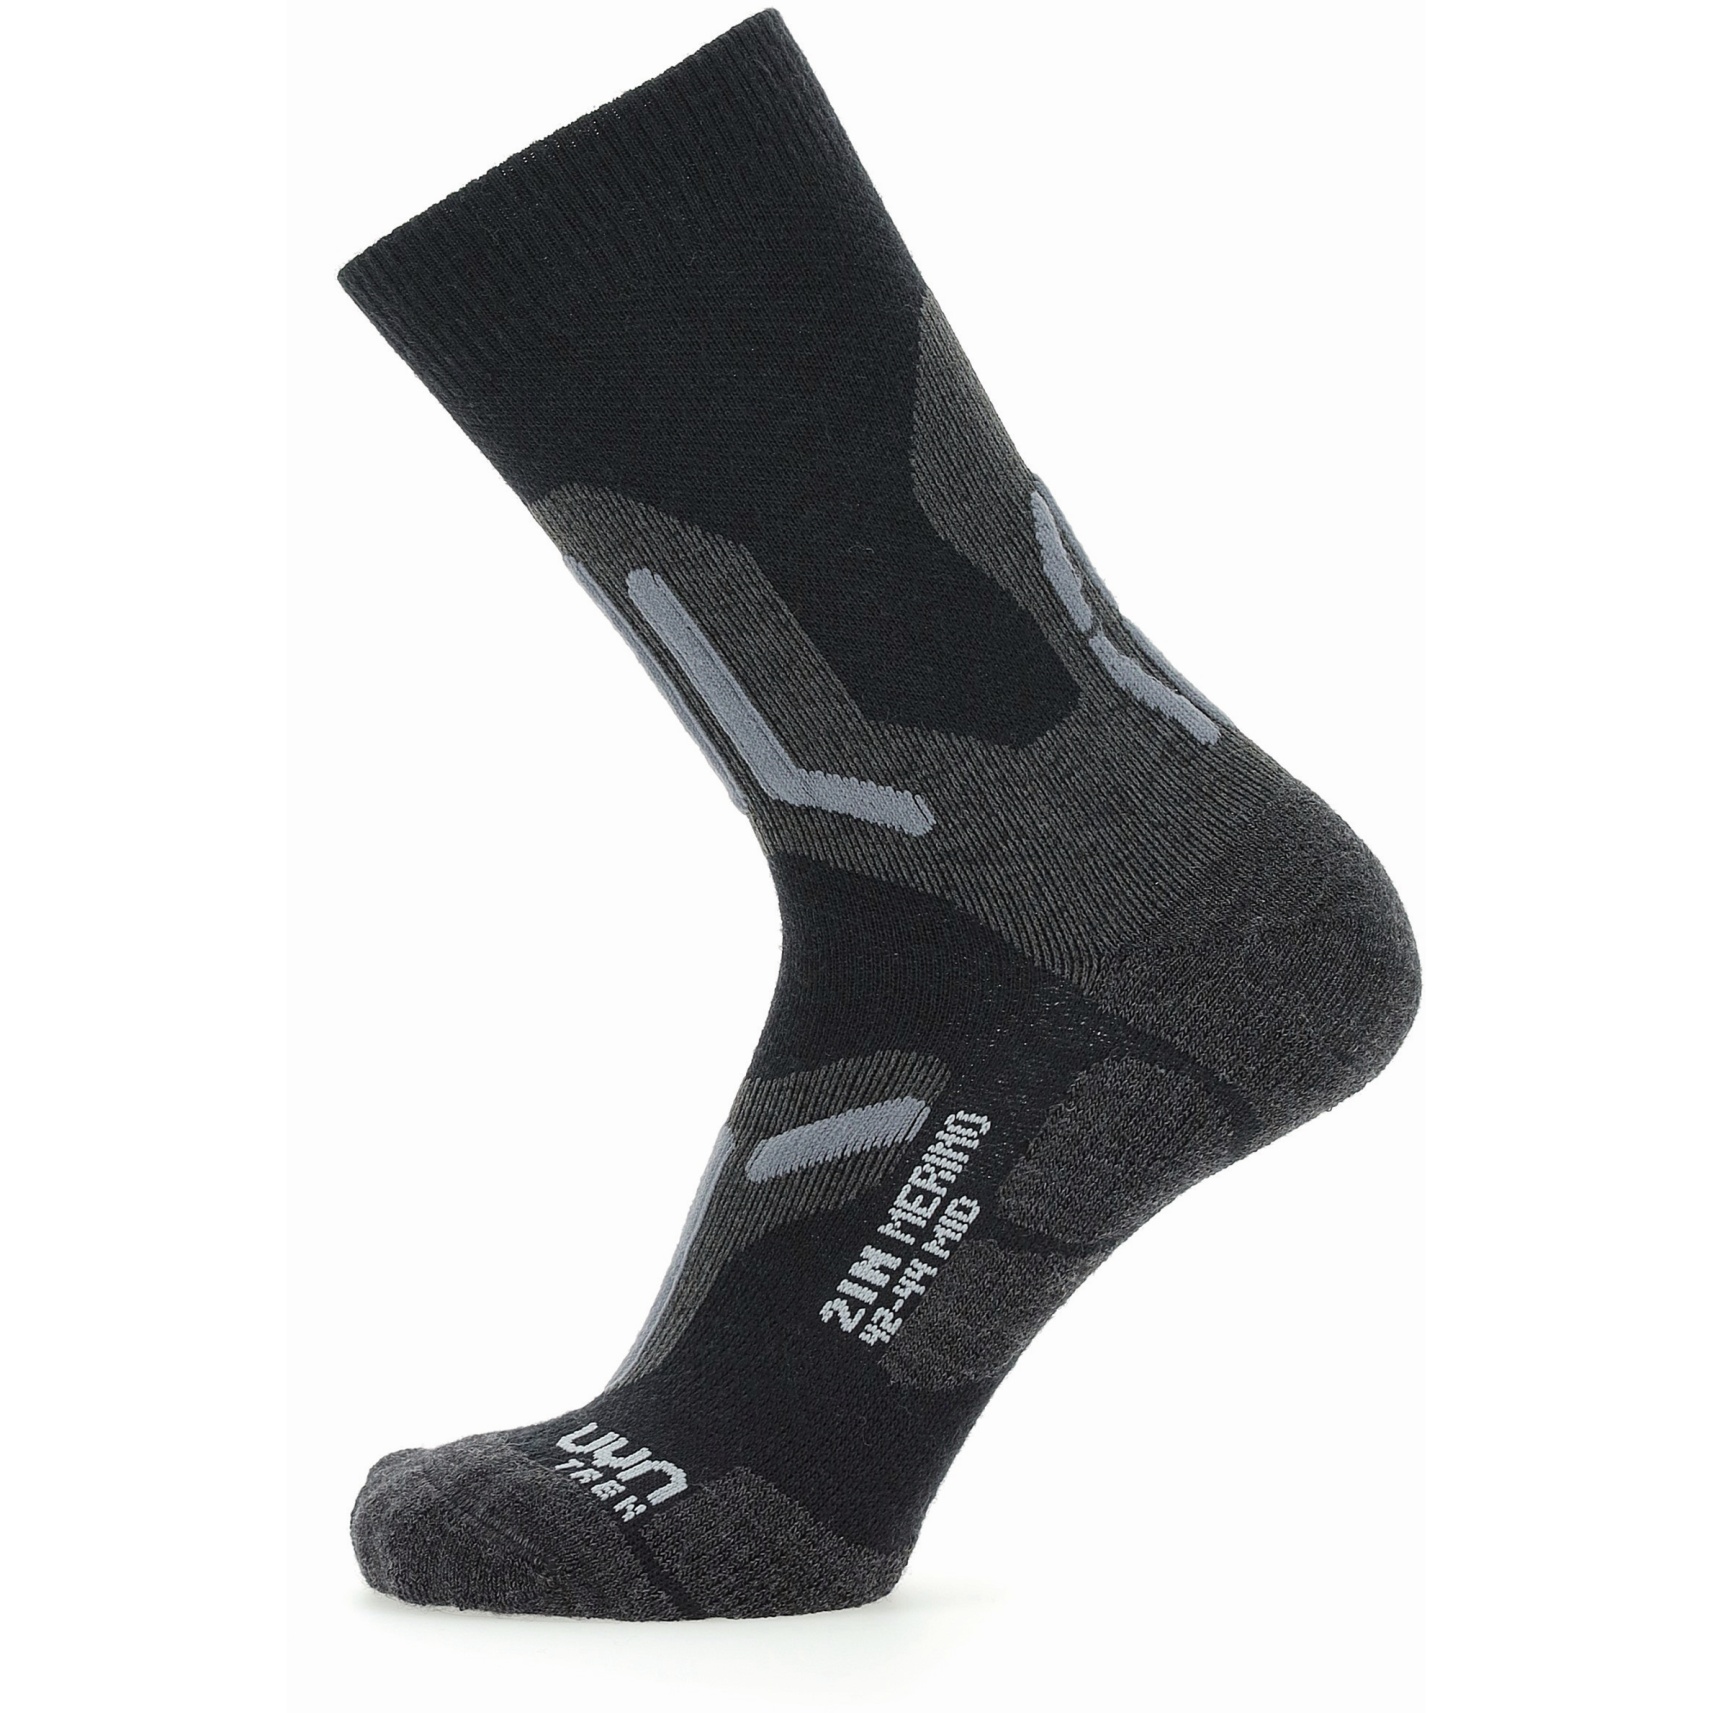 Produktbild von UYN Trekking 2In Merino Mid Cut Socken - Schwarz/Grau